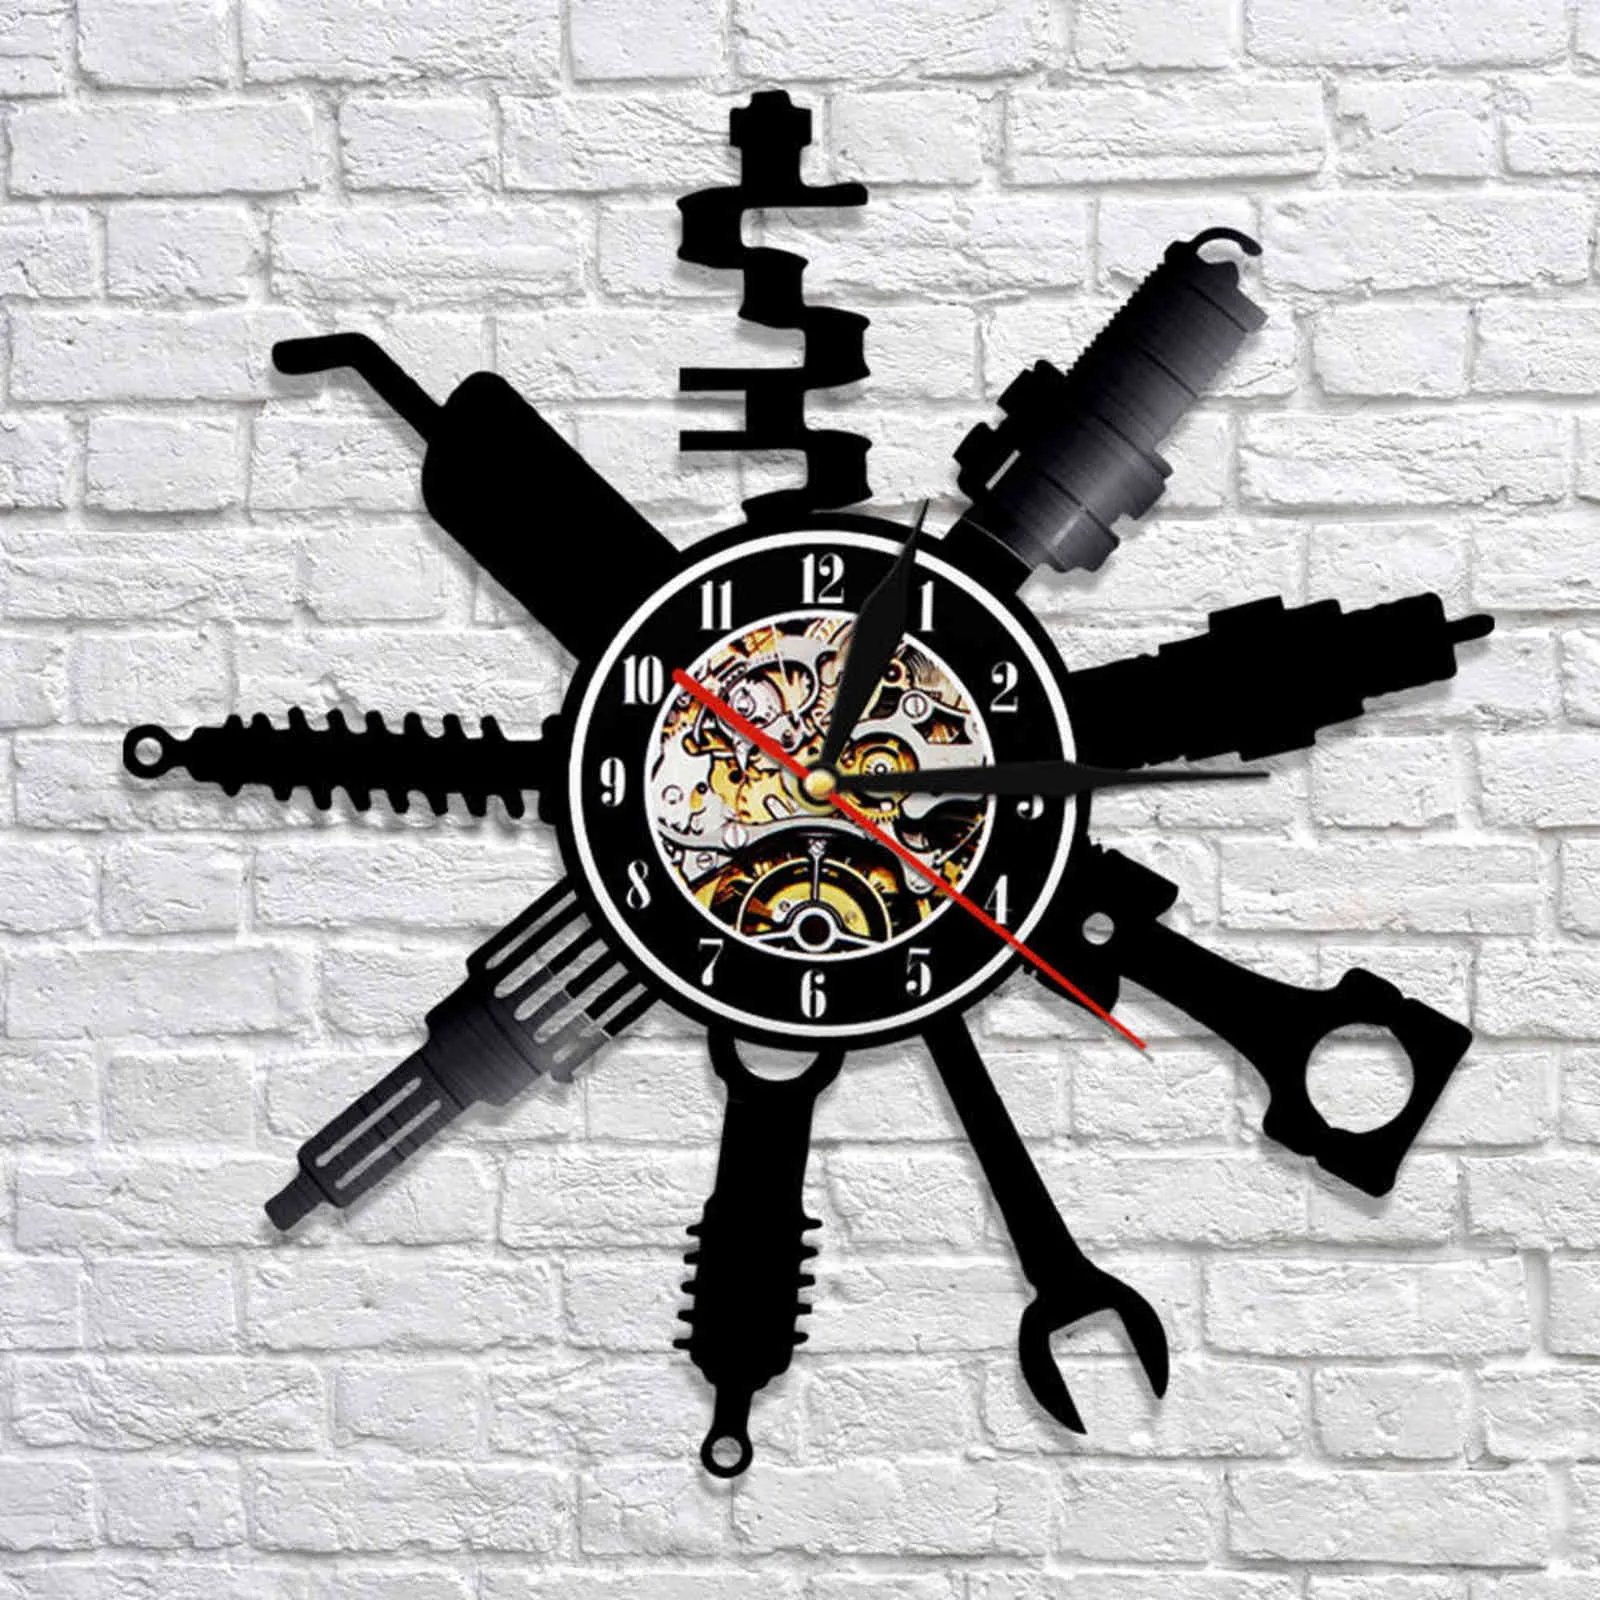 Auto naprawy znaku ścienne dekoracyjny nowoczesny zegara mechanika samochodu warsztat Record Garage Prezent 2111301149429